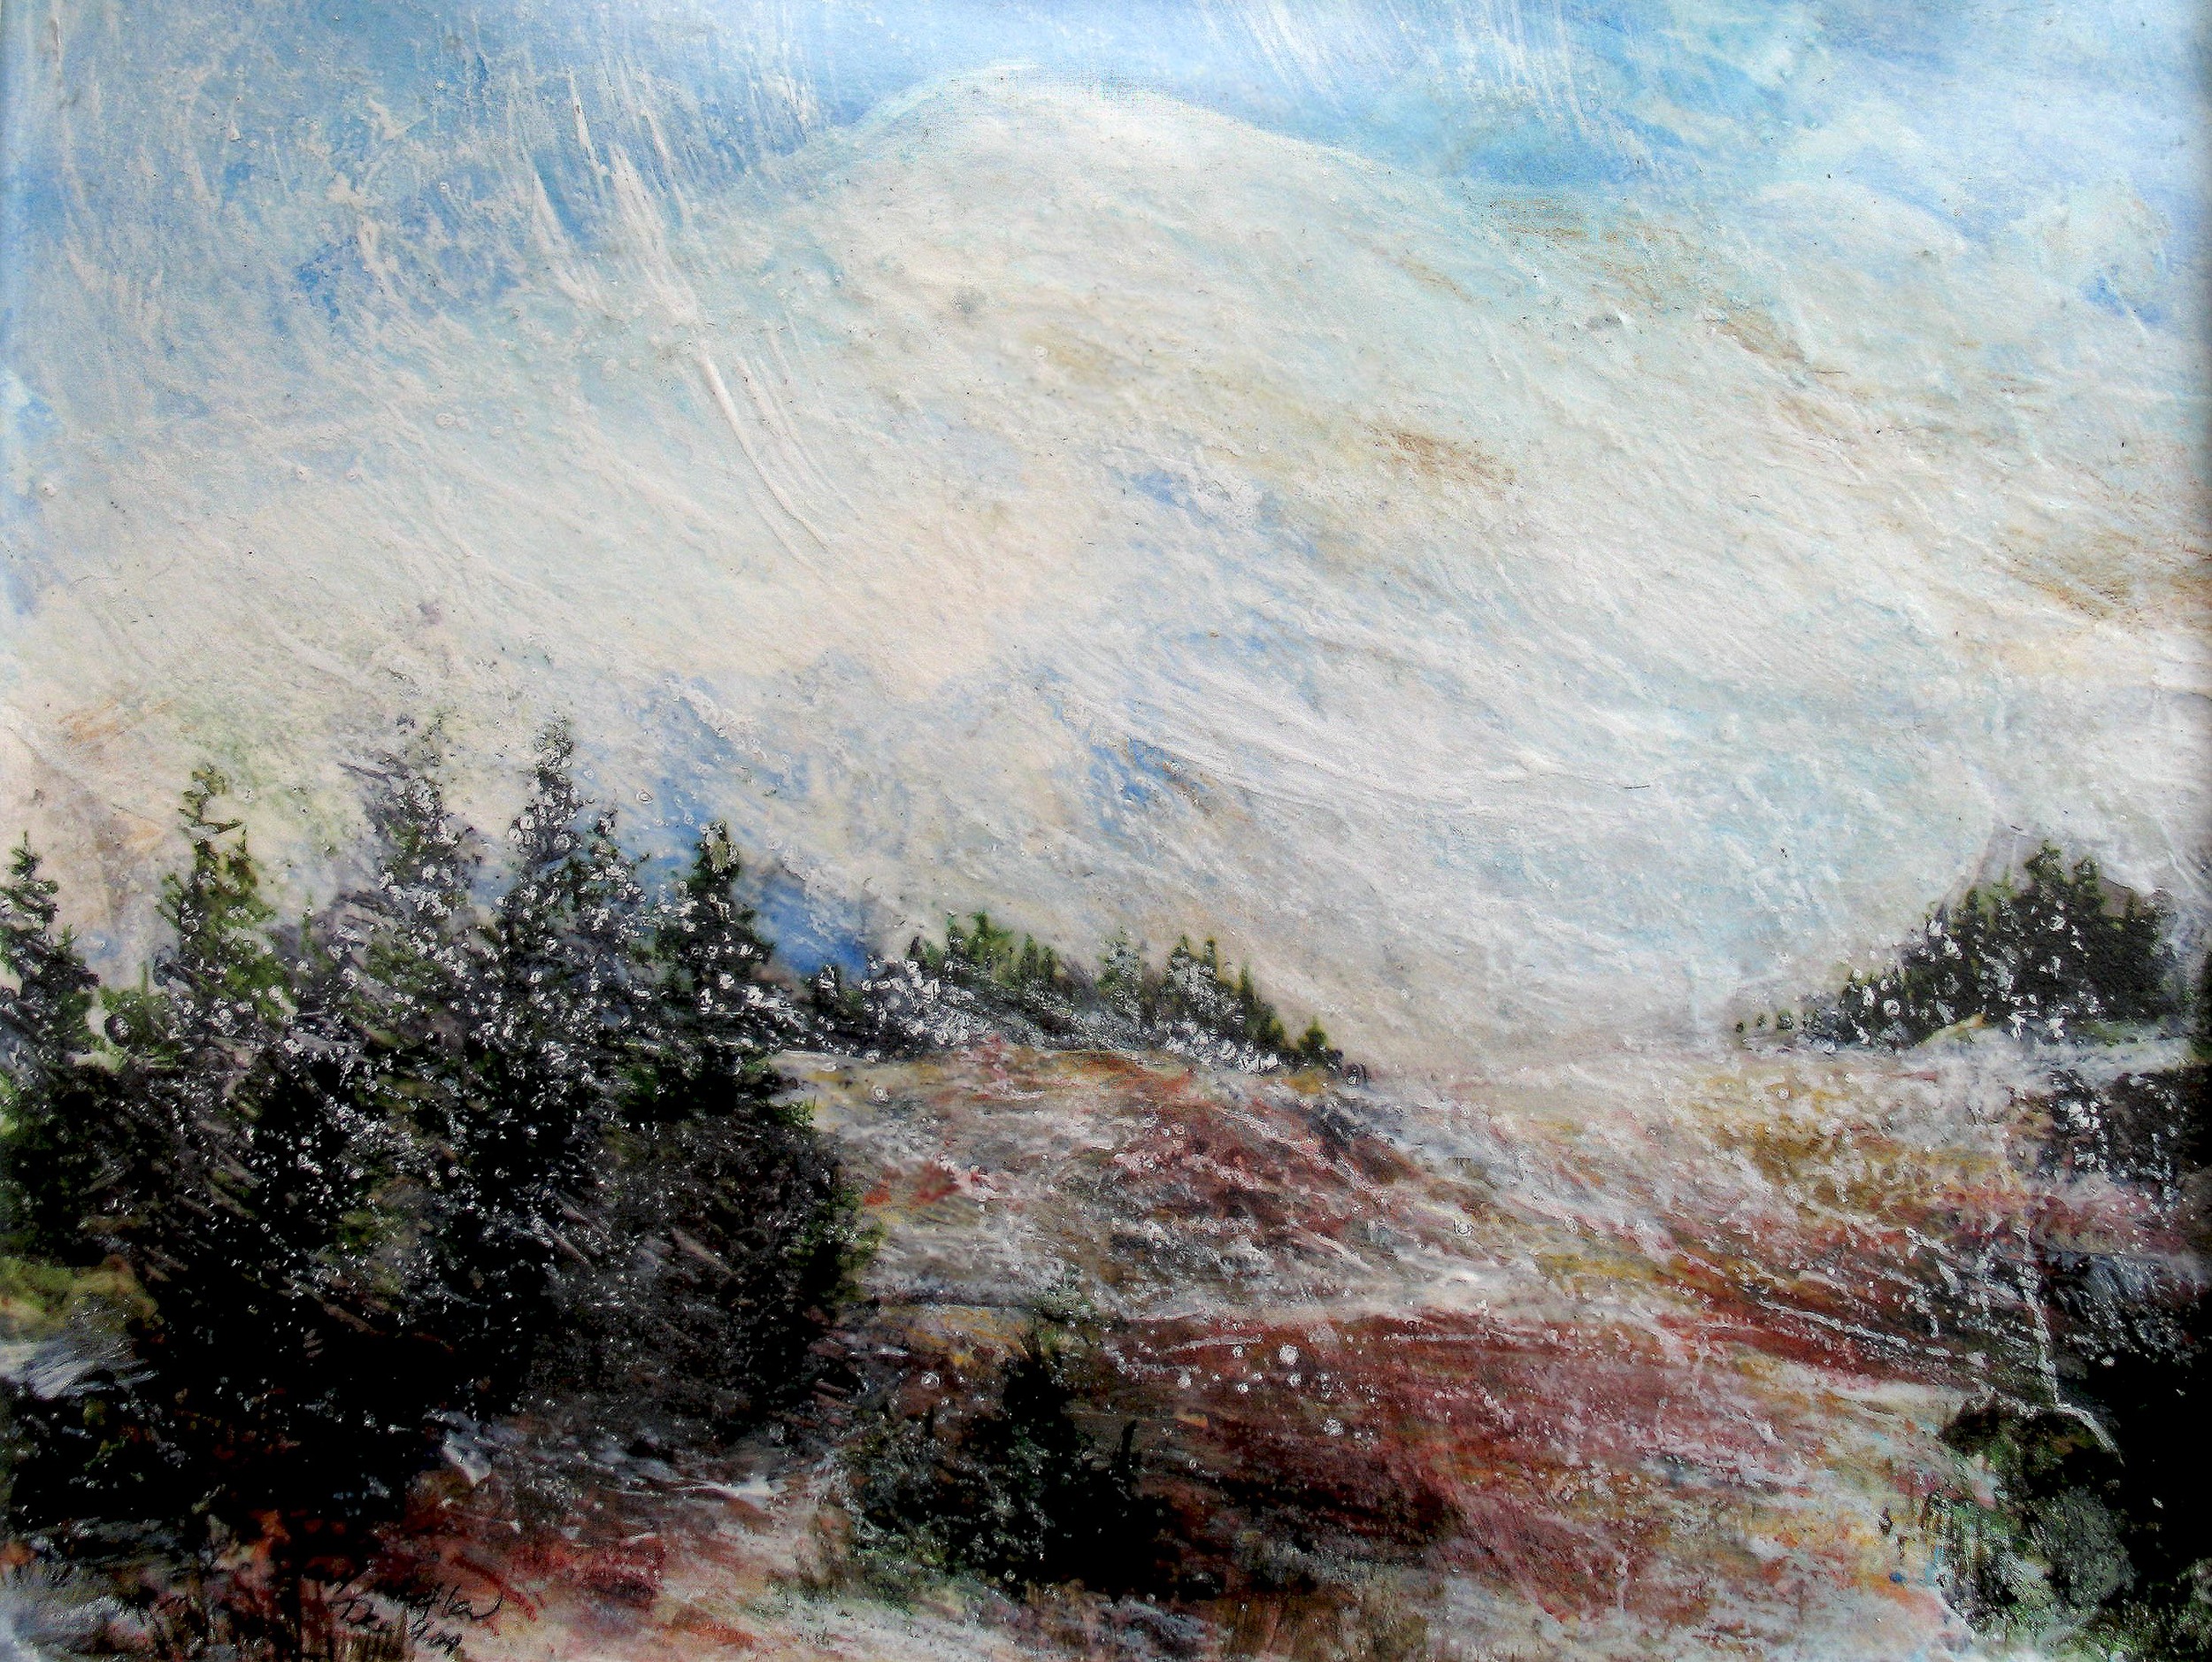  Snow Flurries, Nisqually Vista, Mt Rainier, WA, Mixed media on bristol board, 2010 in private collection 